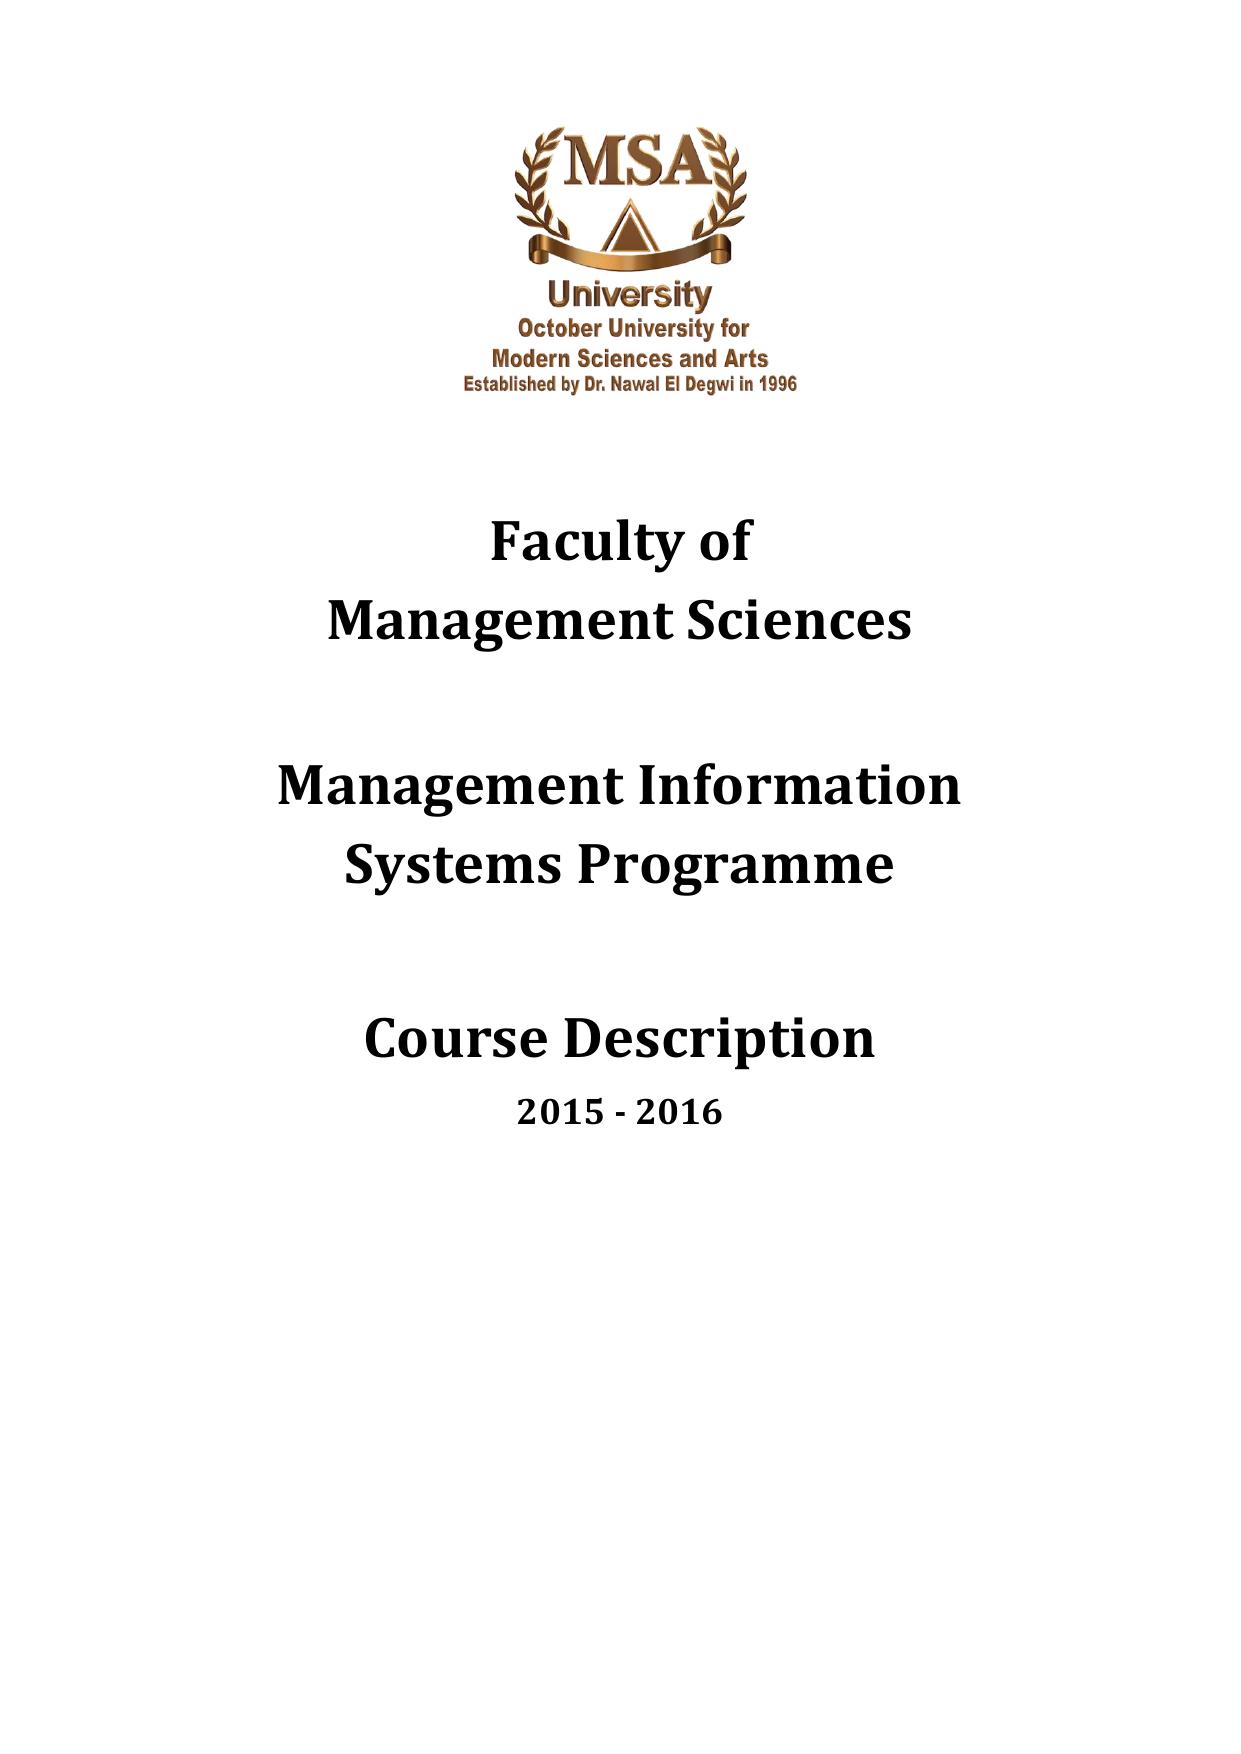 Management-science-MIS-courses-description 2016.pdf